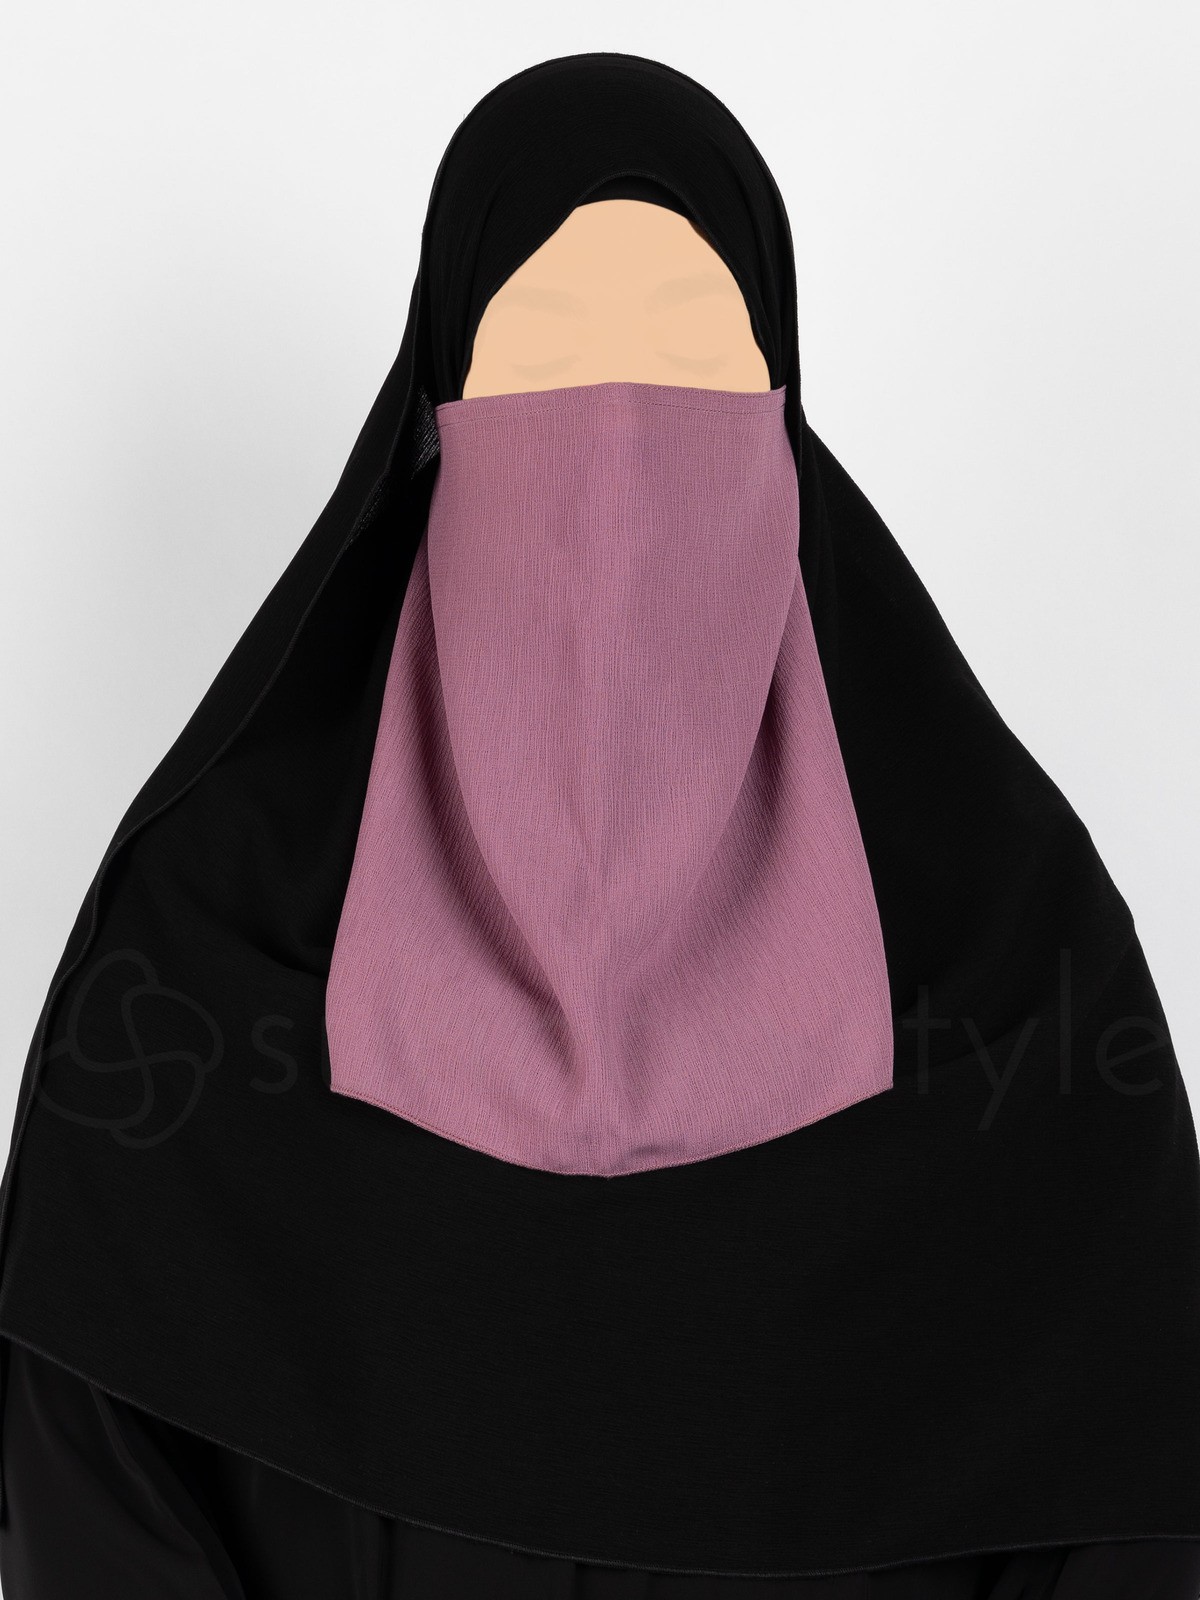 Sunnah Style - Brushed Half Niqab (Mesa Rose)